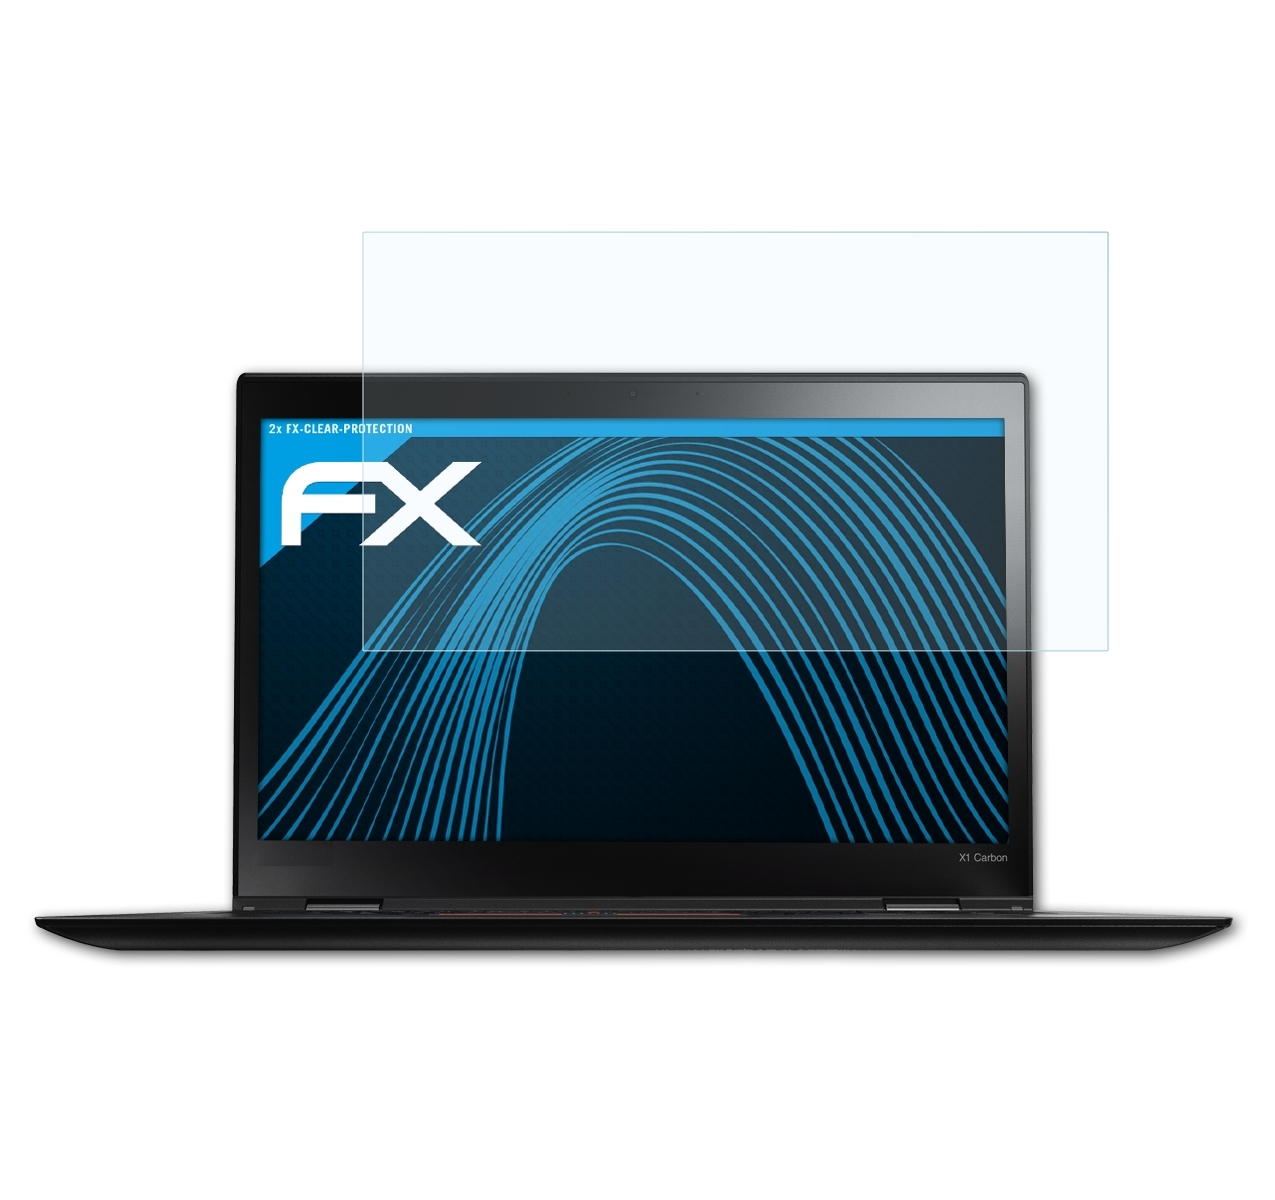 ATFOLIX 2x FX-Clear X1 2015)) Carbon Gen. Lenovo (3rd Displayschutz(für ThinkPad